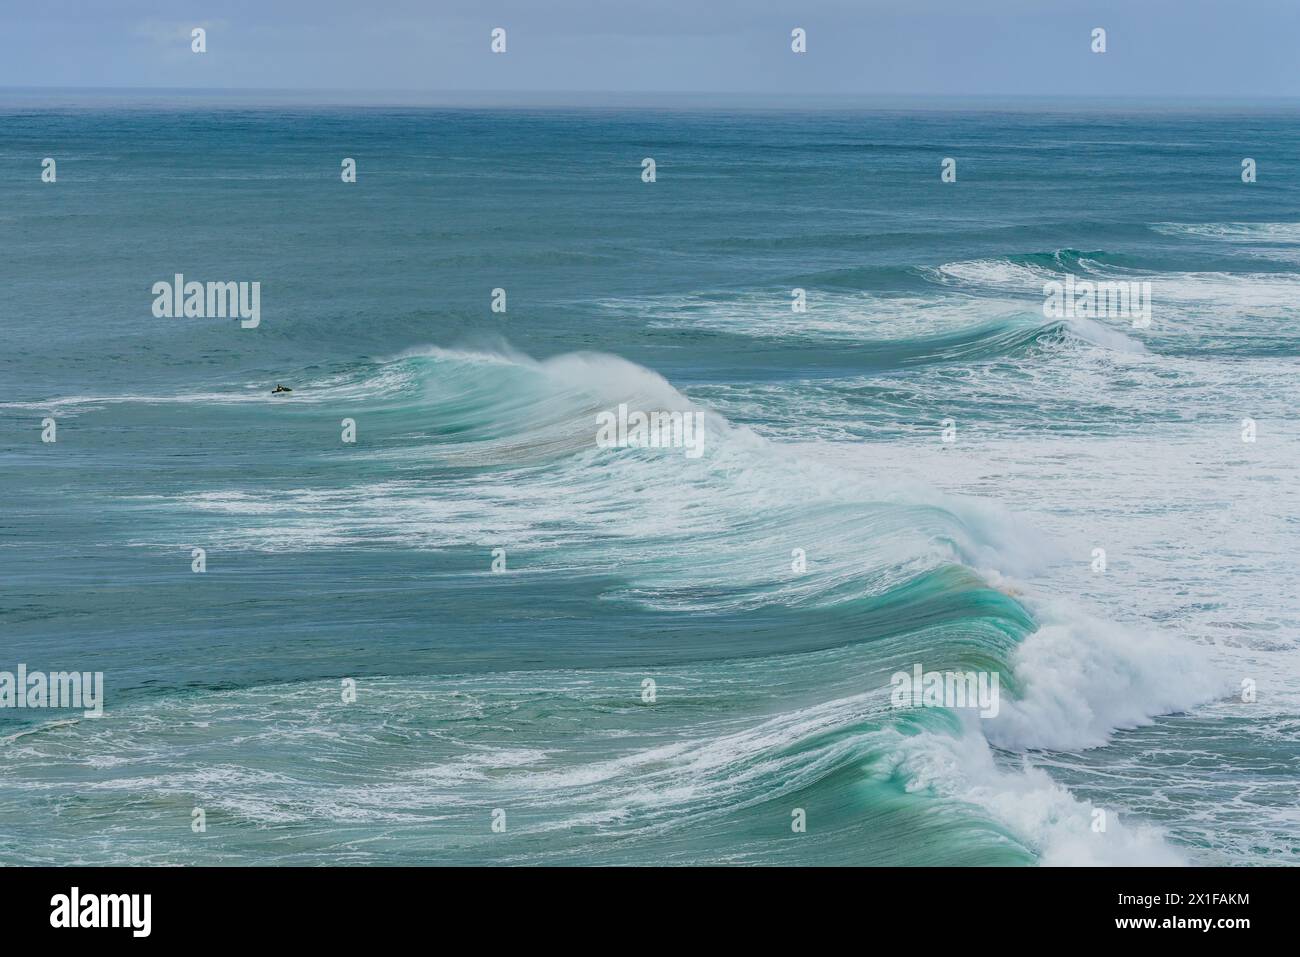 Ein einsamer Surfer reitet auf einer riesigen Welle und zeigt den beeindruckenden Surf, für den Nazare berühmt ist. Portugal, Silver Coast Stockfoto